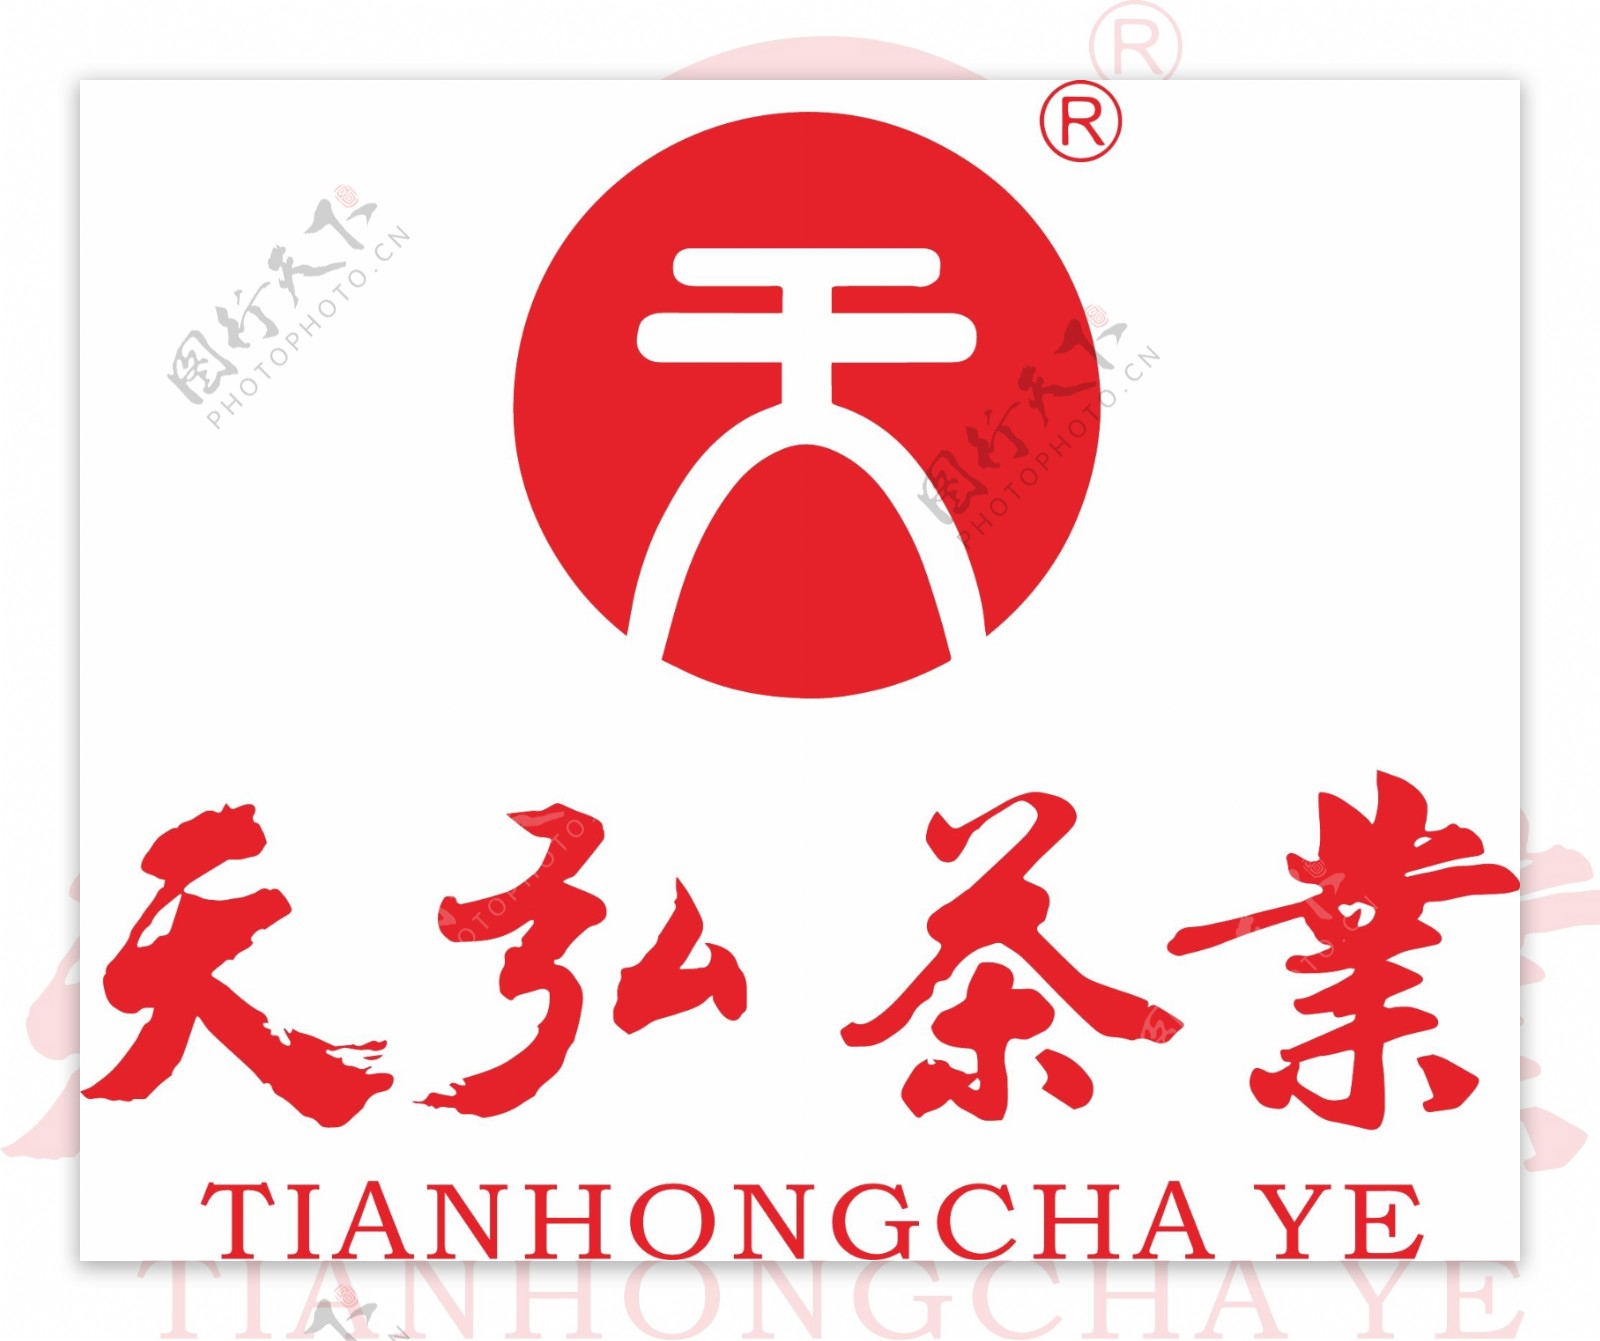 天弘茶业标志